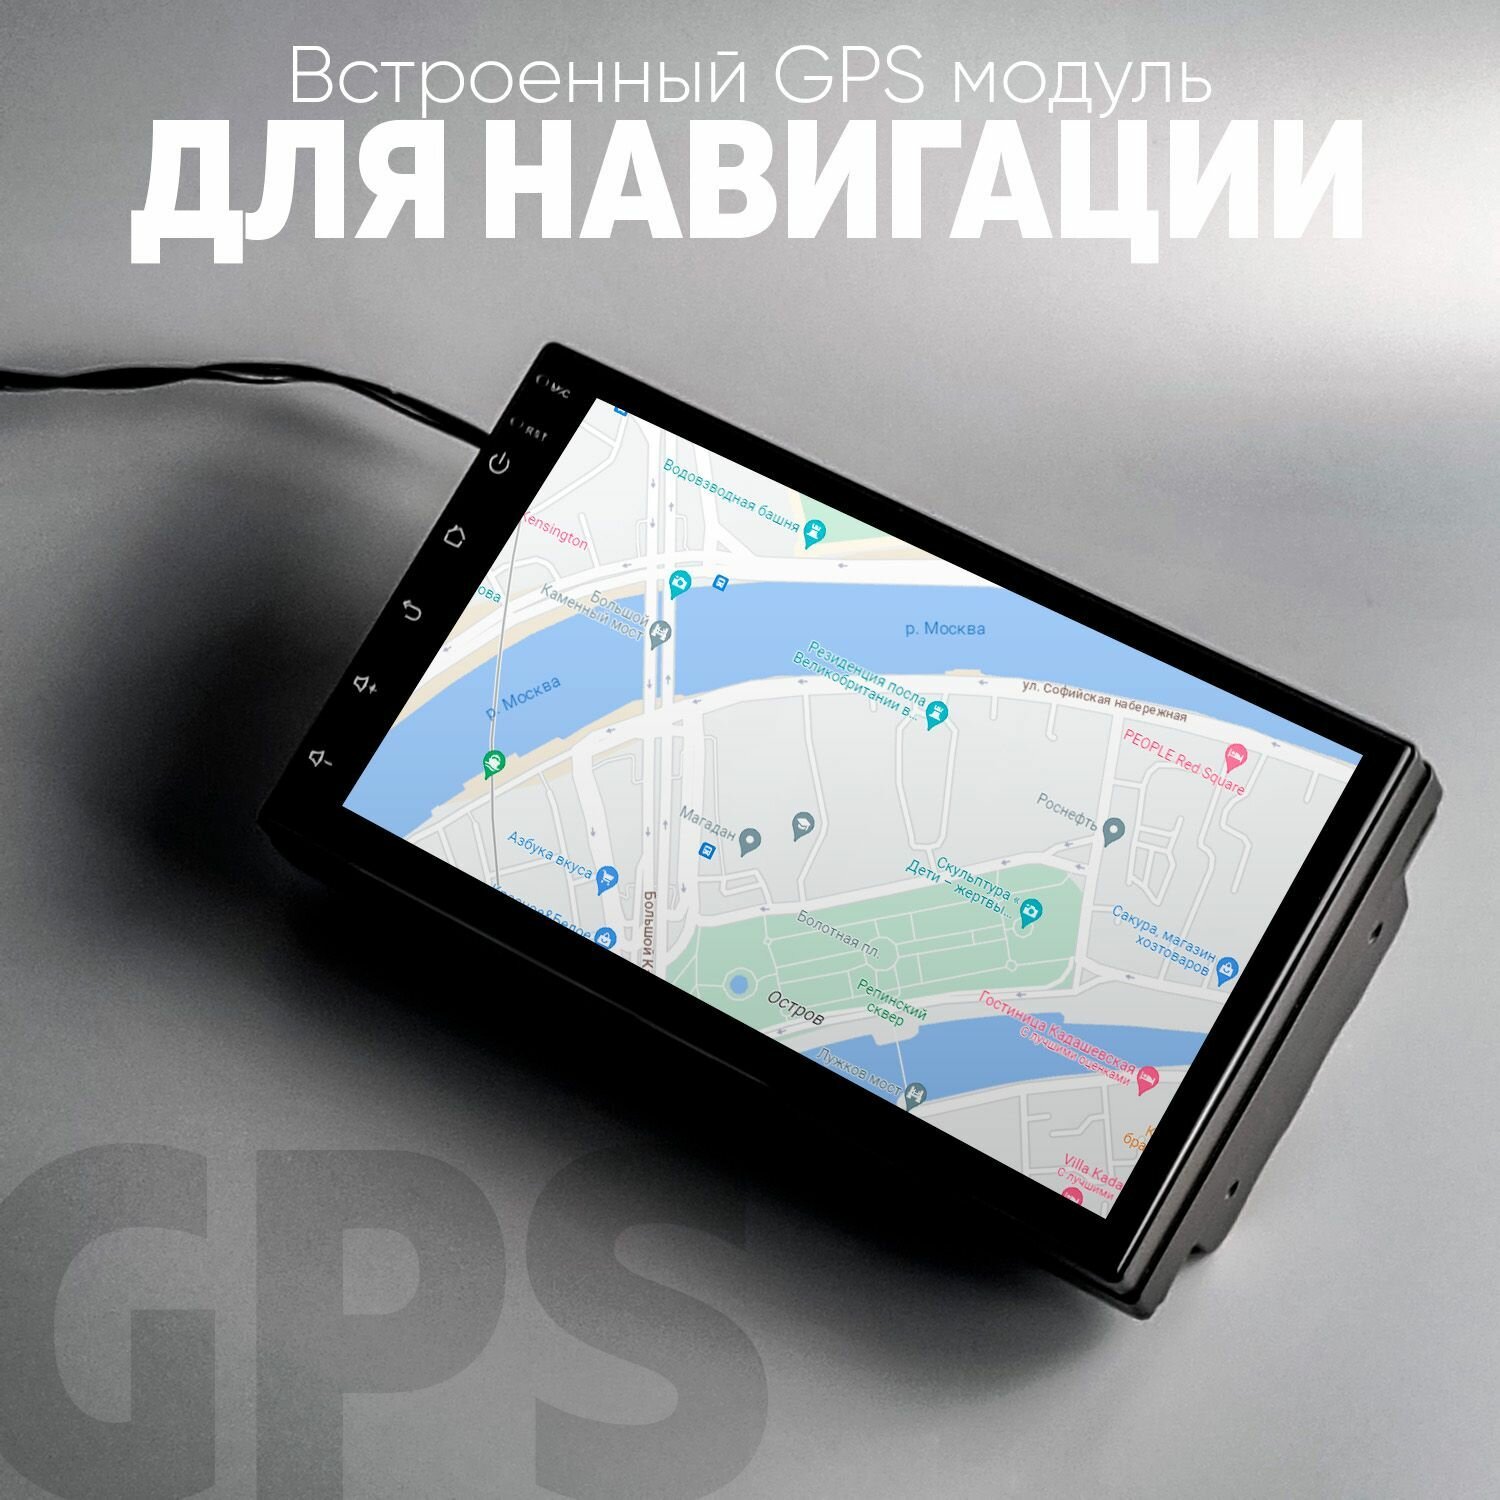 Автомагнитола android(1/32) 2 din 7 дюймов сенсорная с GPS . Магнитола андройд сенсорная 2 дин 7 дюймов.